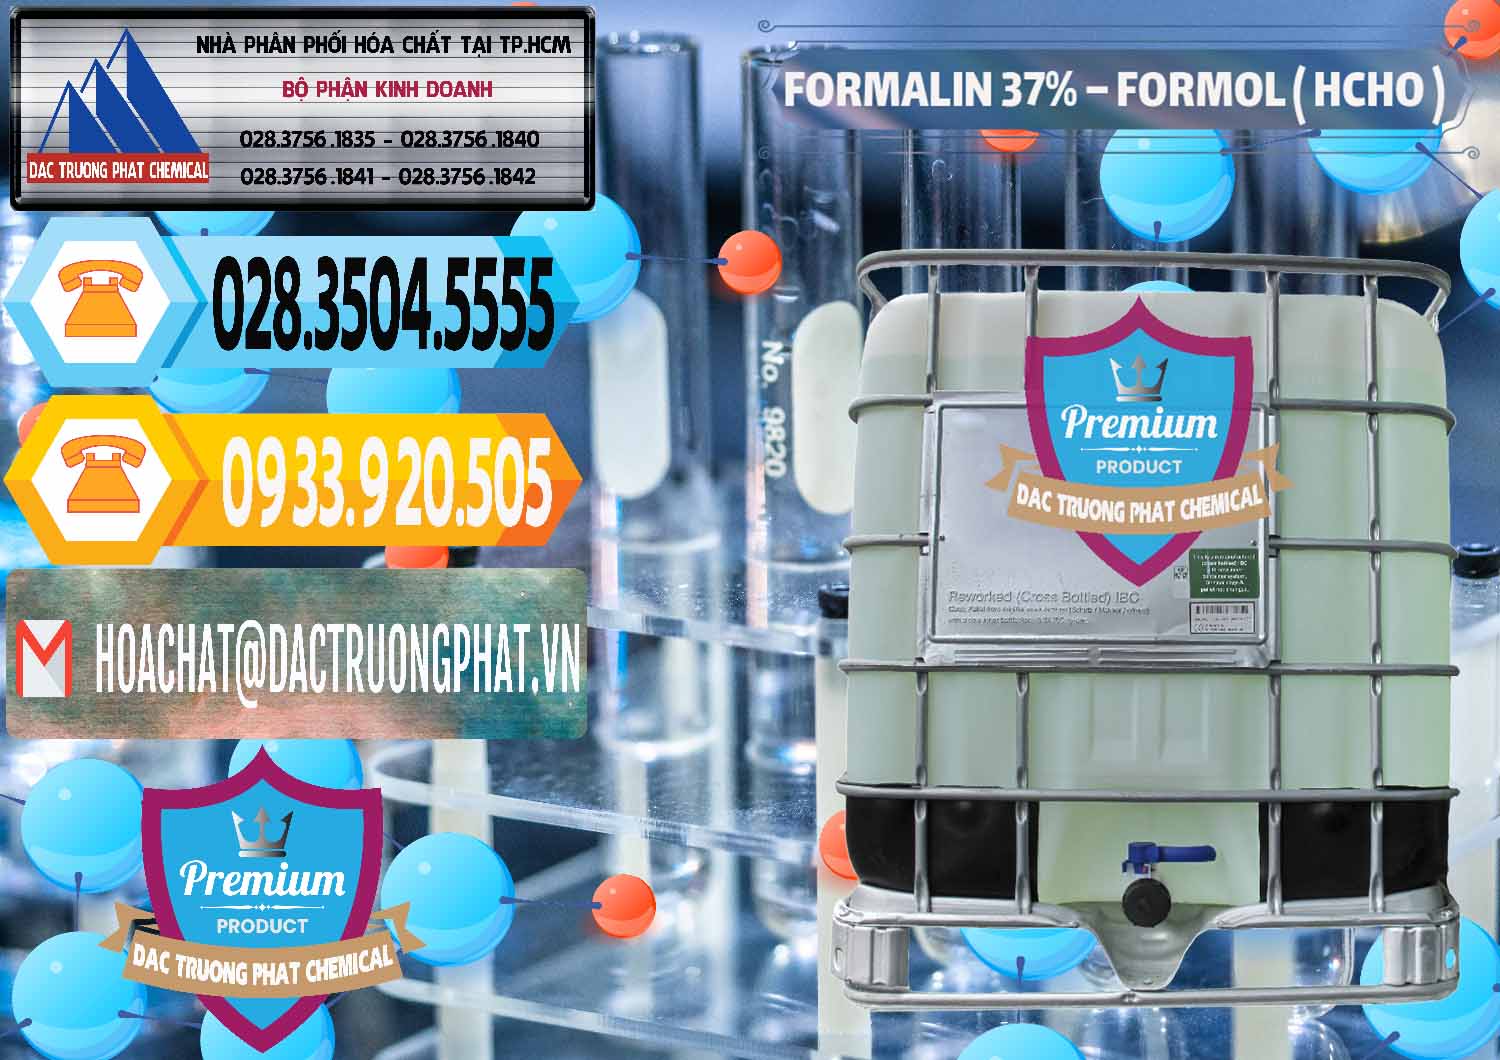 Công ty chuyên cung cấp _ kinh doanh Formalin - Formol ( HCHO ) 37% Việt Nam - 0187 - Nơi phân phối _ cung cấp hóa chất tại TP.HCM - hoachattayrua.net